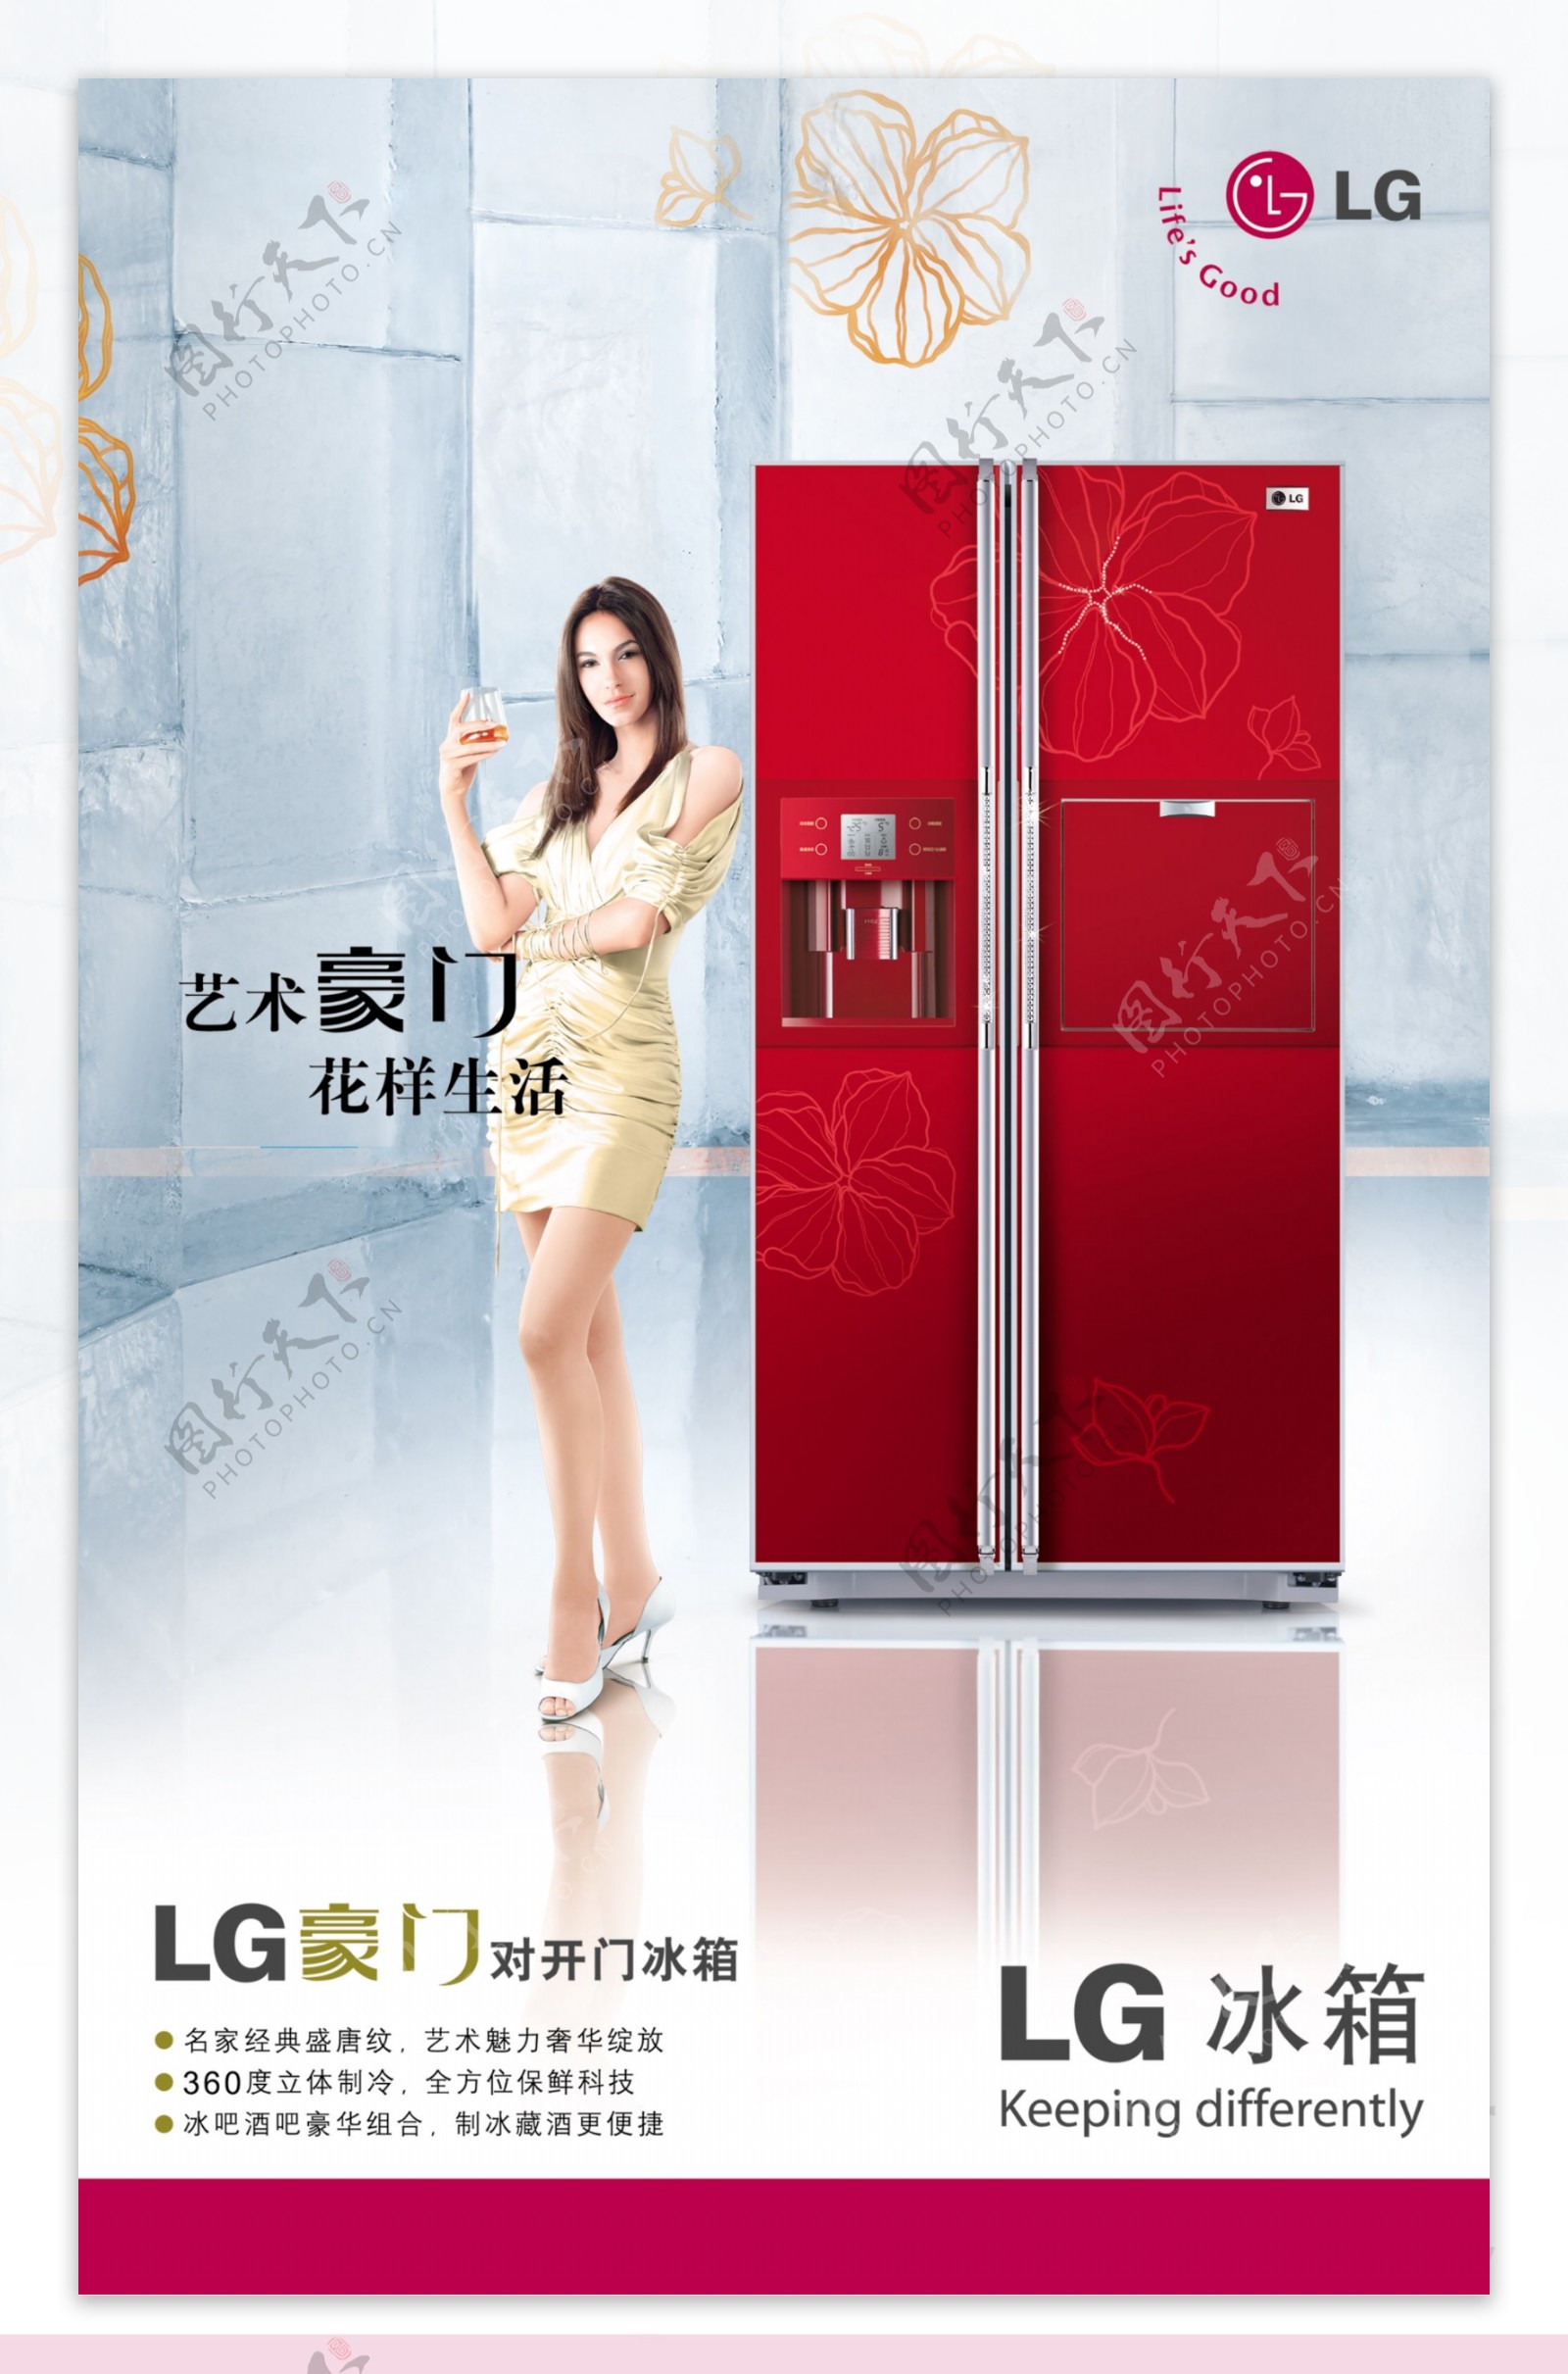 龙腾广告平面广告PSD分层素材源文件家用电器类LG冰箱女性美女